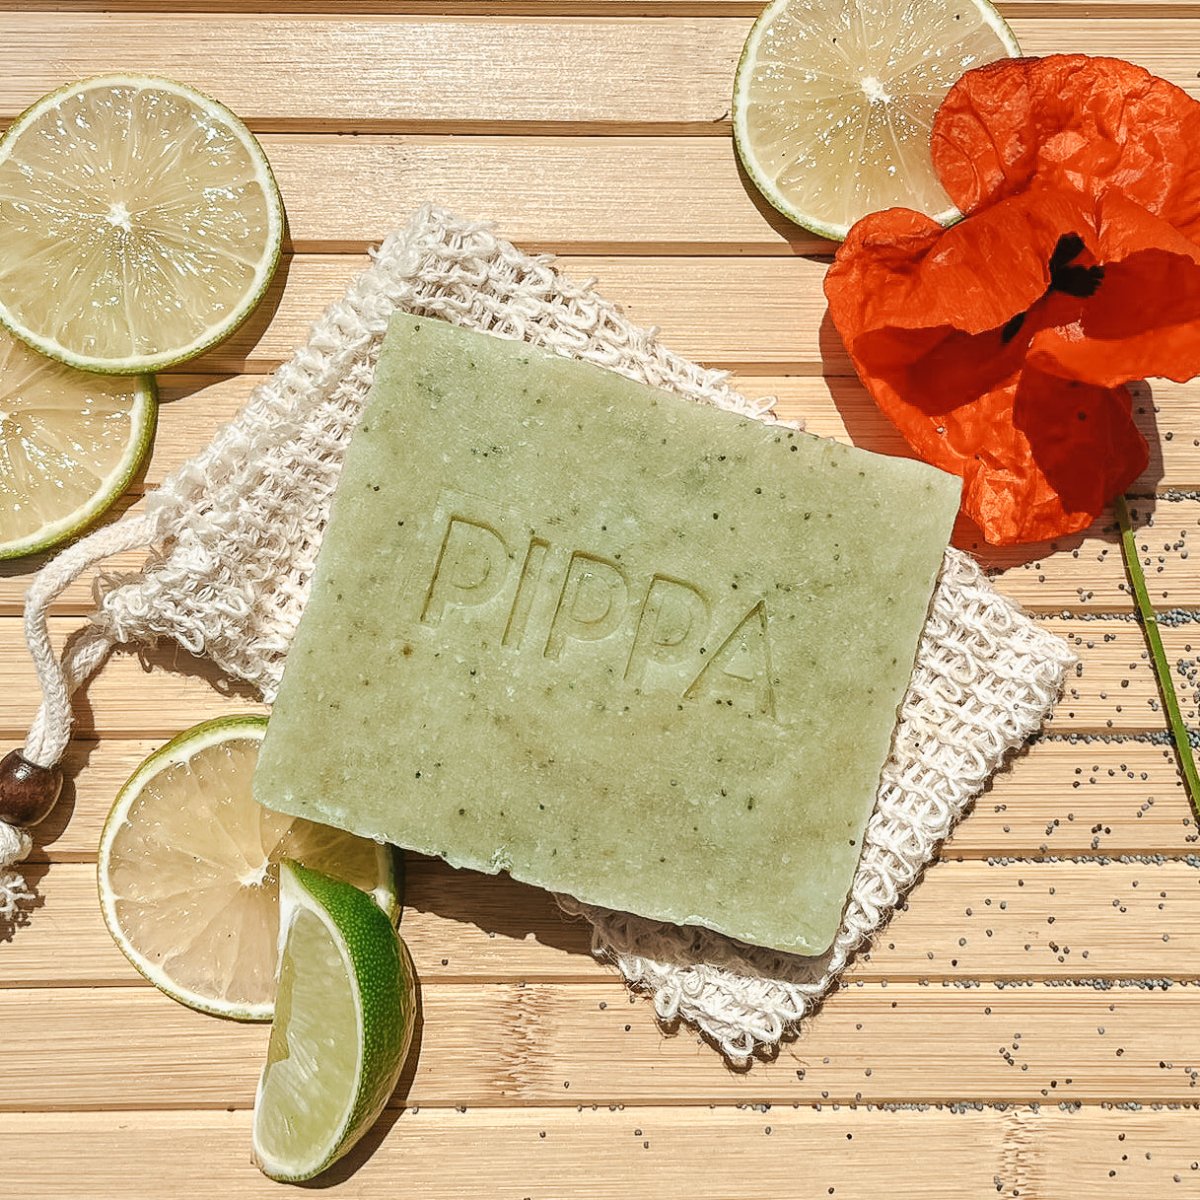 PIPPA Paardenshampoo Poppy Seed & Lime - PIPPA Equestrian Soap - Shampoo en crèmespoeling voor huisdieren